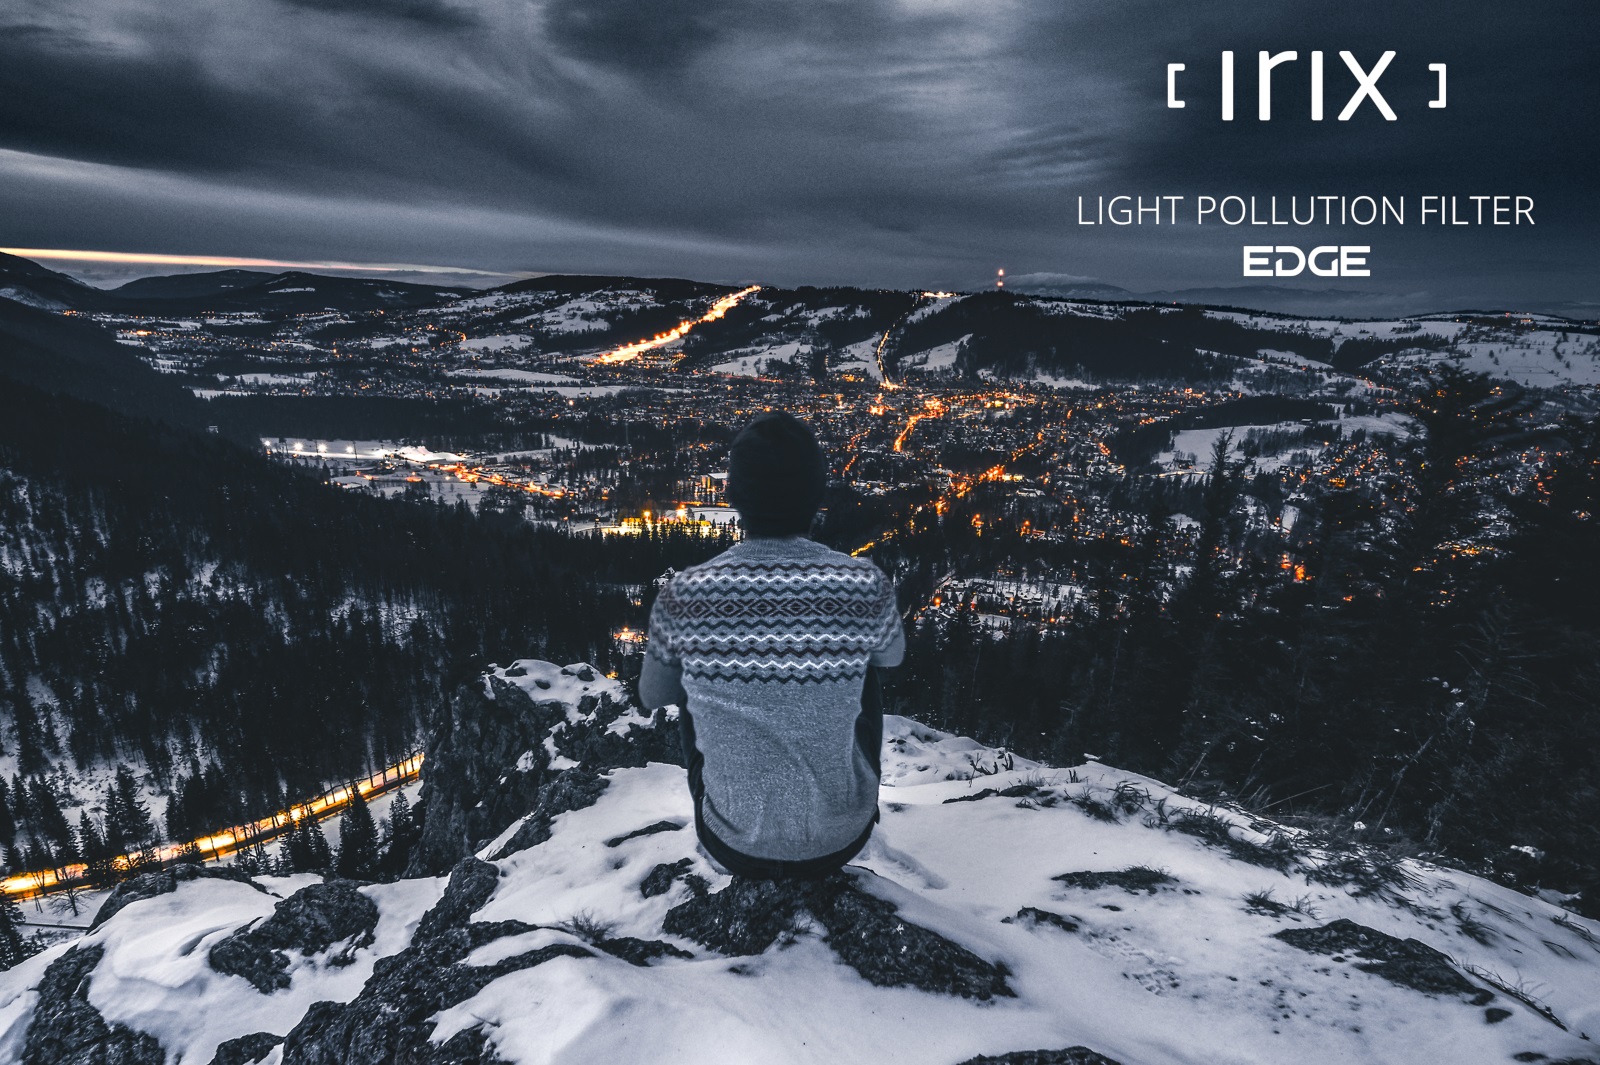 Irix Edge filtro de contaminación lumínica 